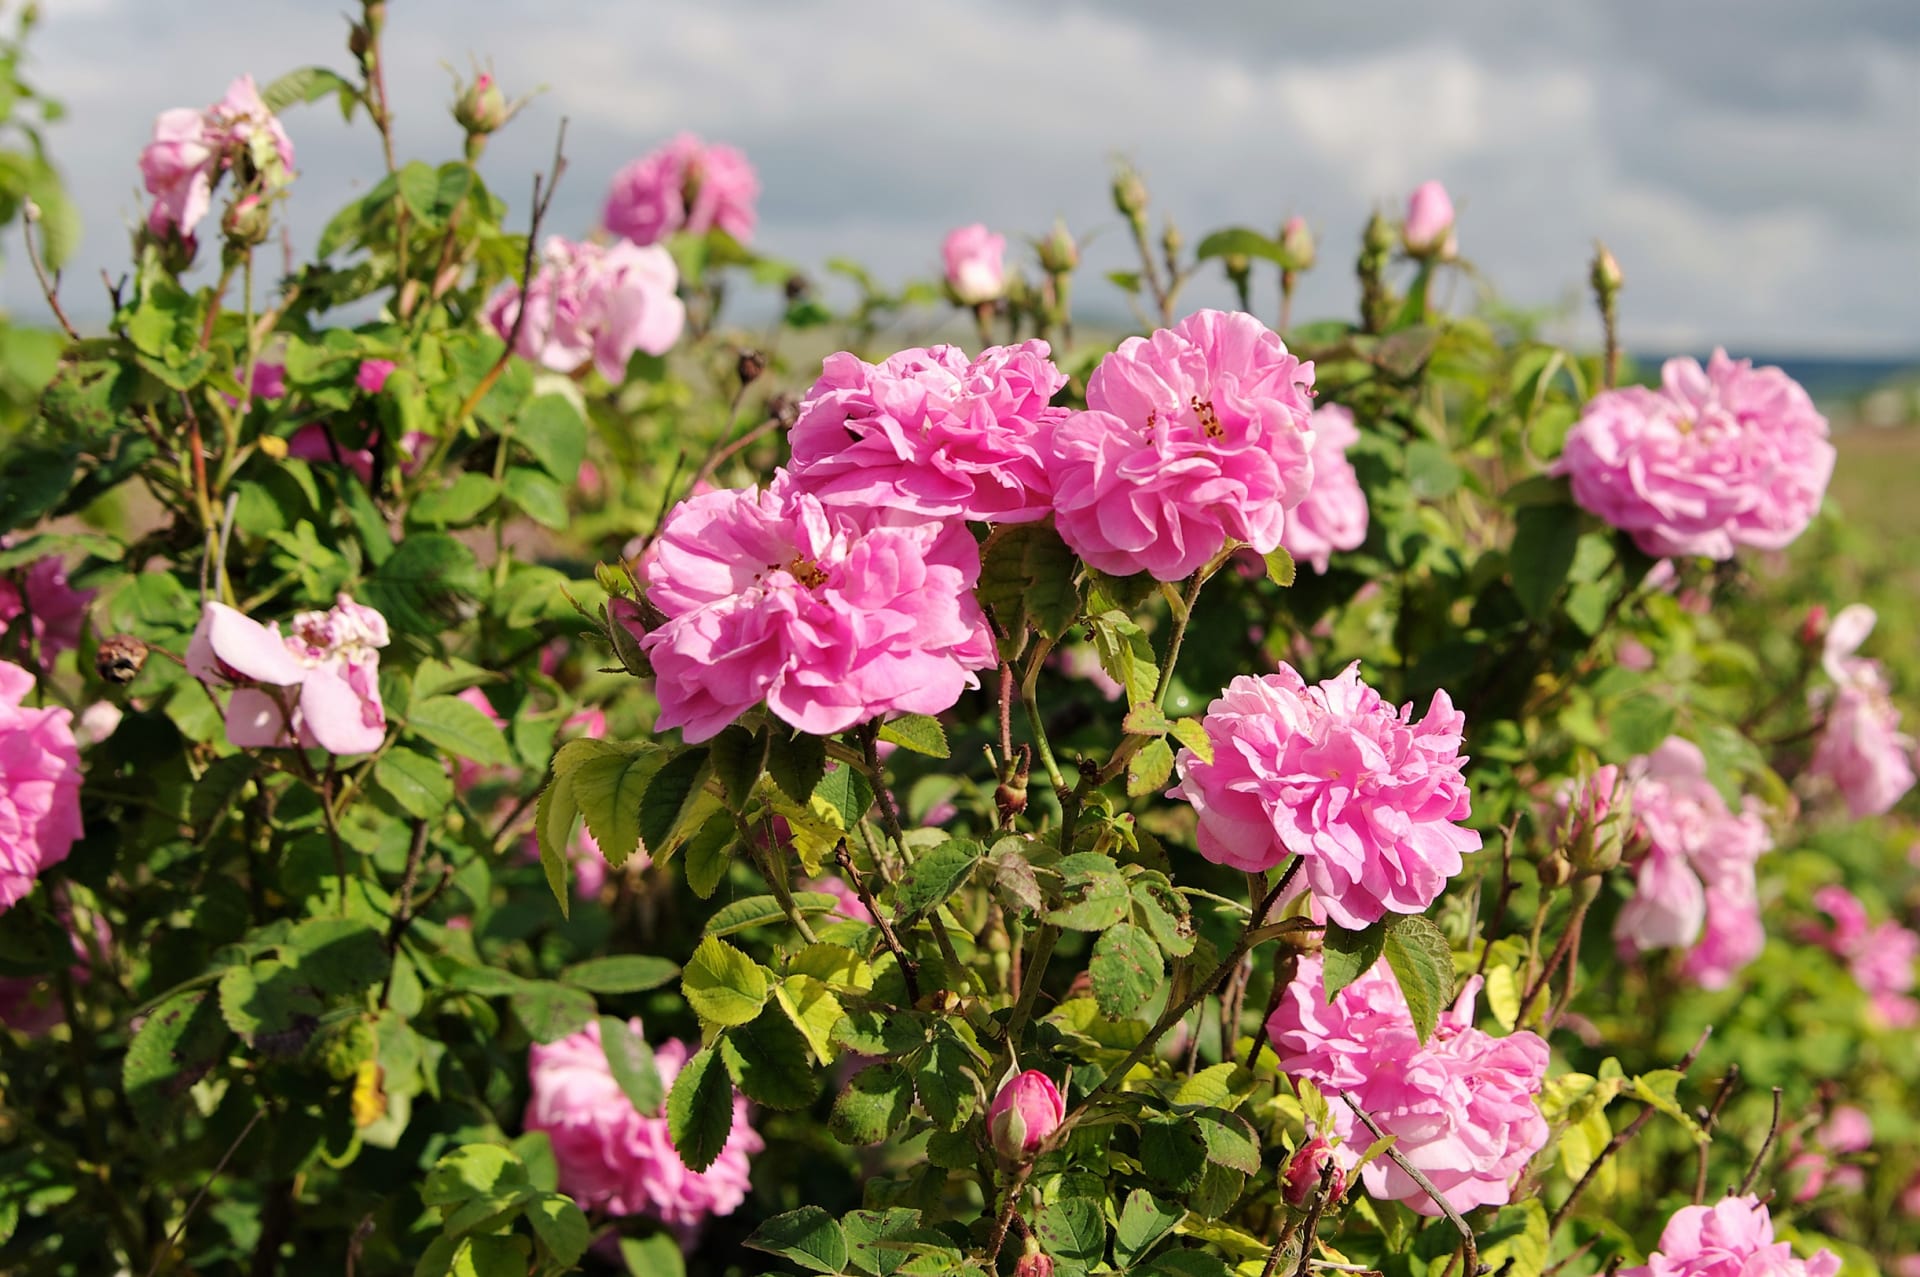 Růže damašská(Rosa damascena), zvaná také damascénská, turecká či bulharská,obsahuje éterické oleje, které se po staletí využívají pro své uklidňující, antibakteriální a protizánětlivé účinky. 